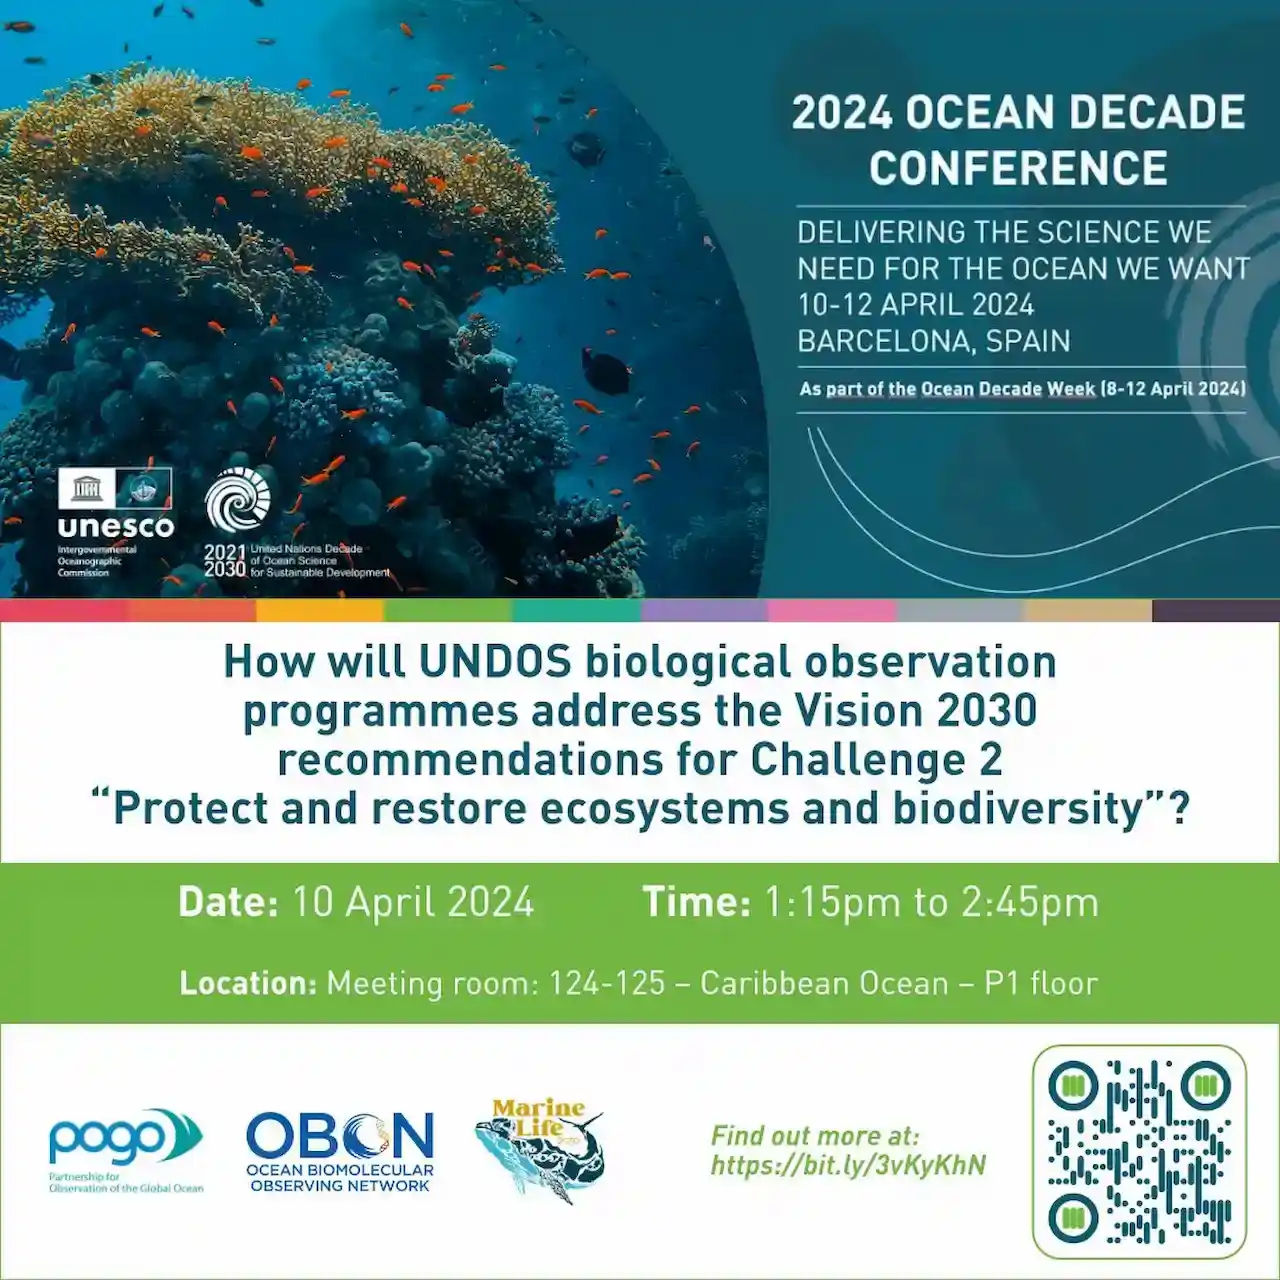 La Conferencia de la Década de los Océanos 2024 se celebra en Barcelona / Imagen: UNESCO